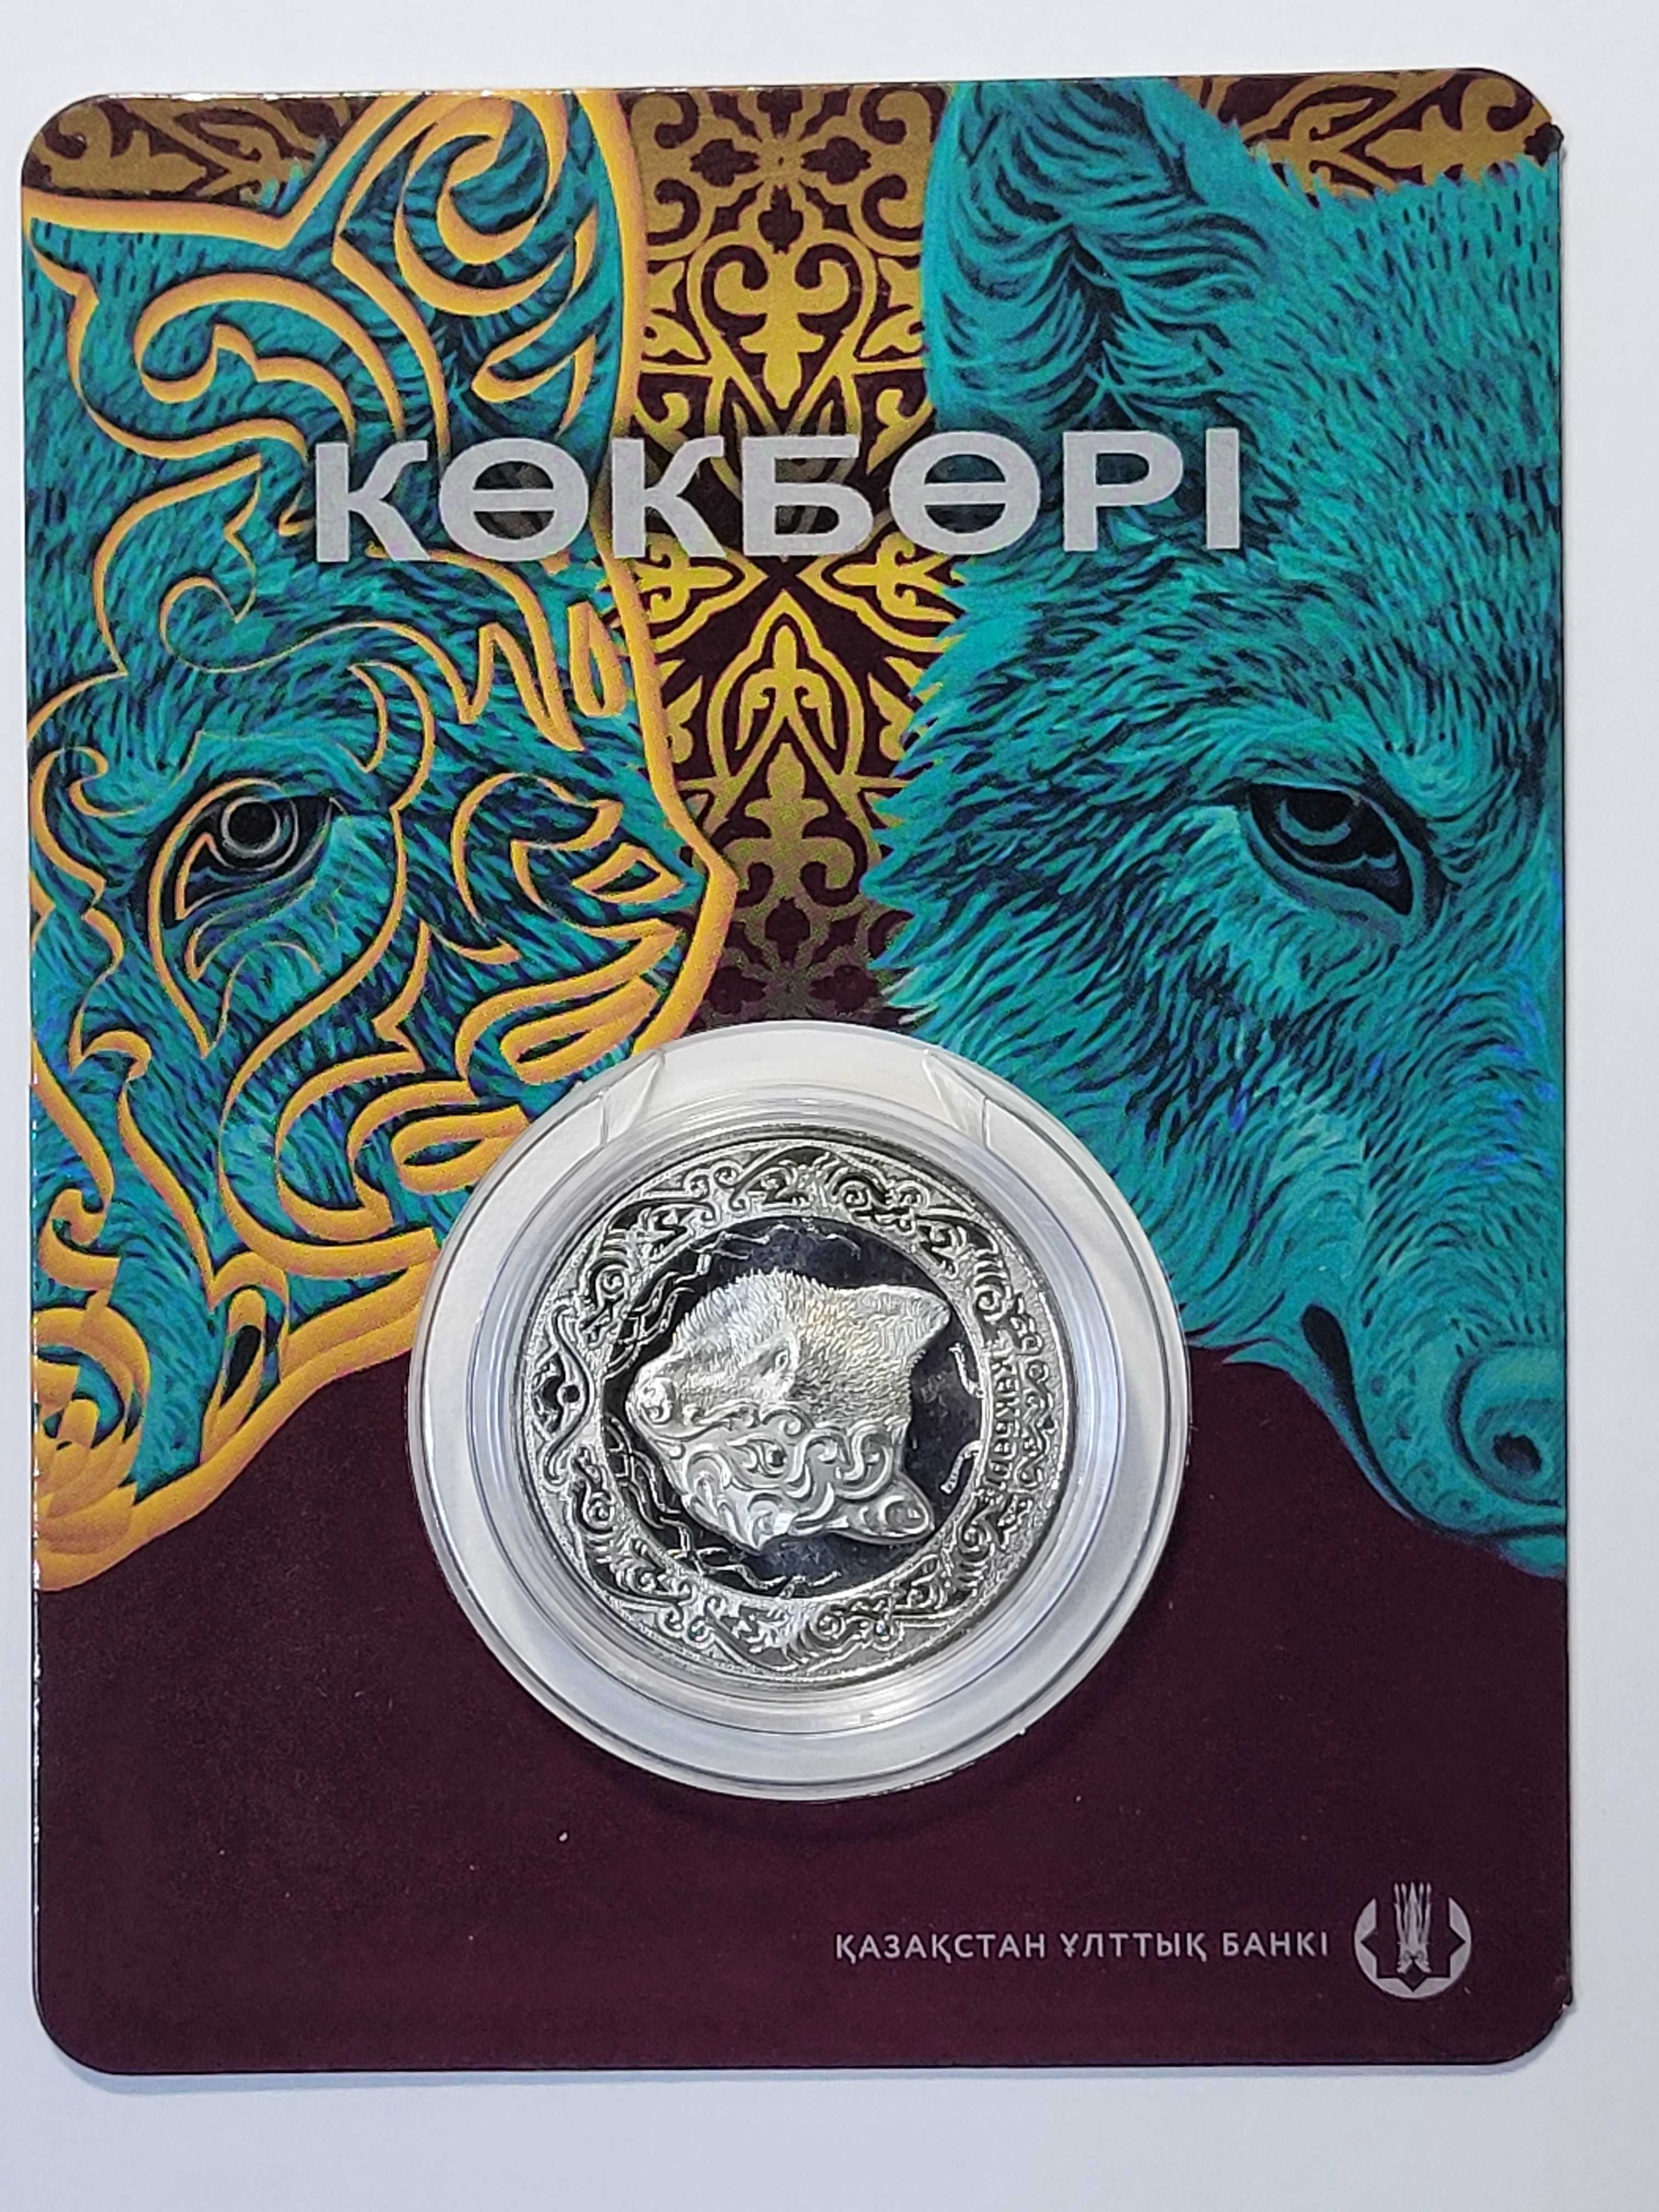 Монета 100 тенге Көкбөрі (небесный волк)